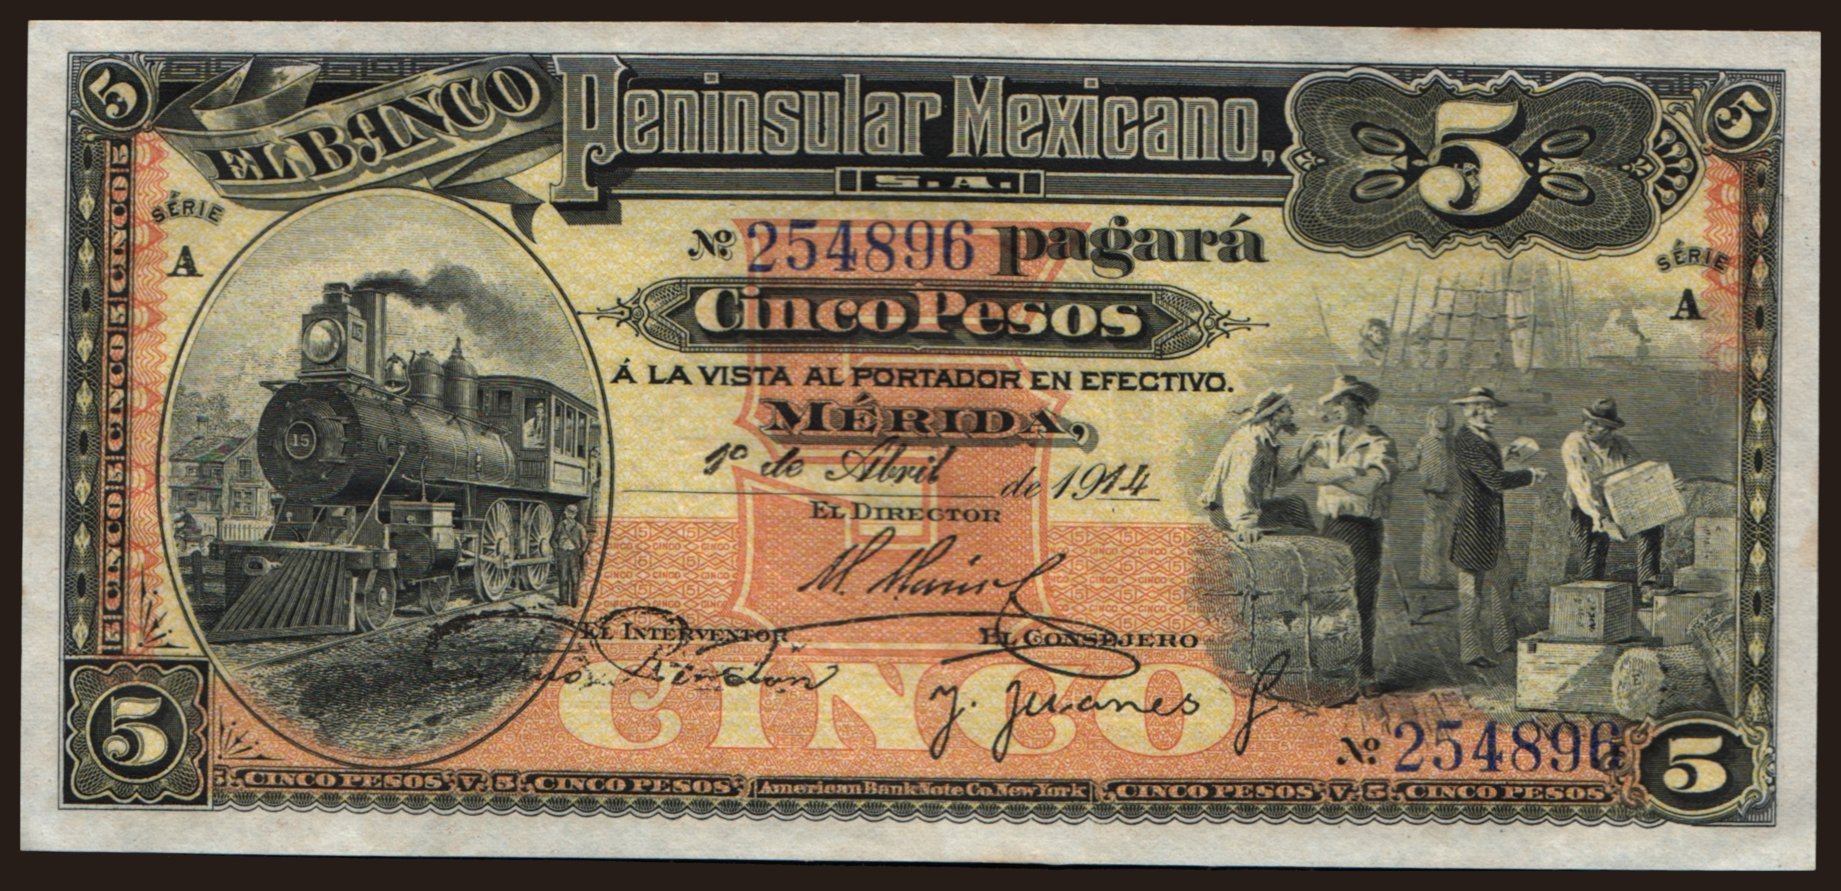 El Banco Peninsular Mexicano, 5 pesos, 1914